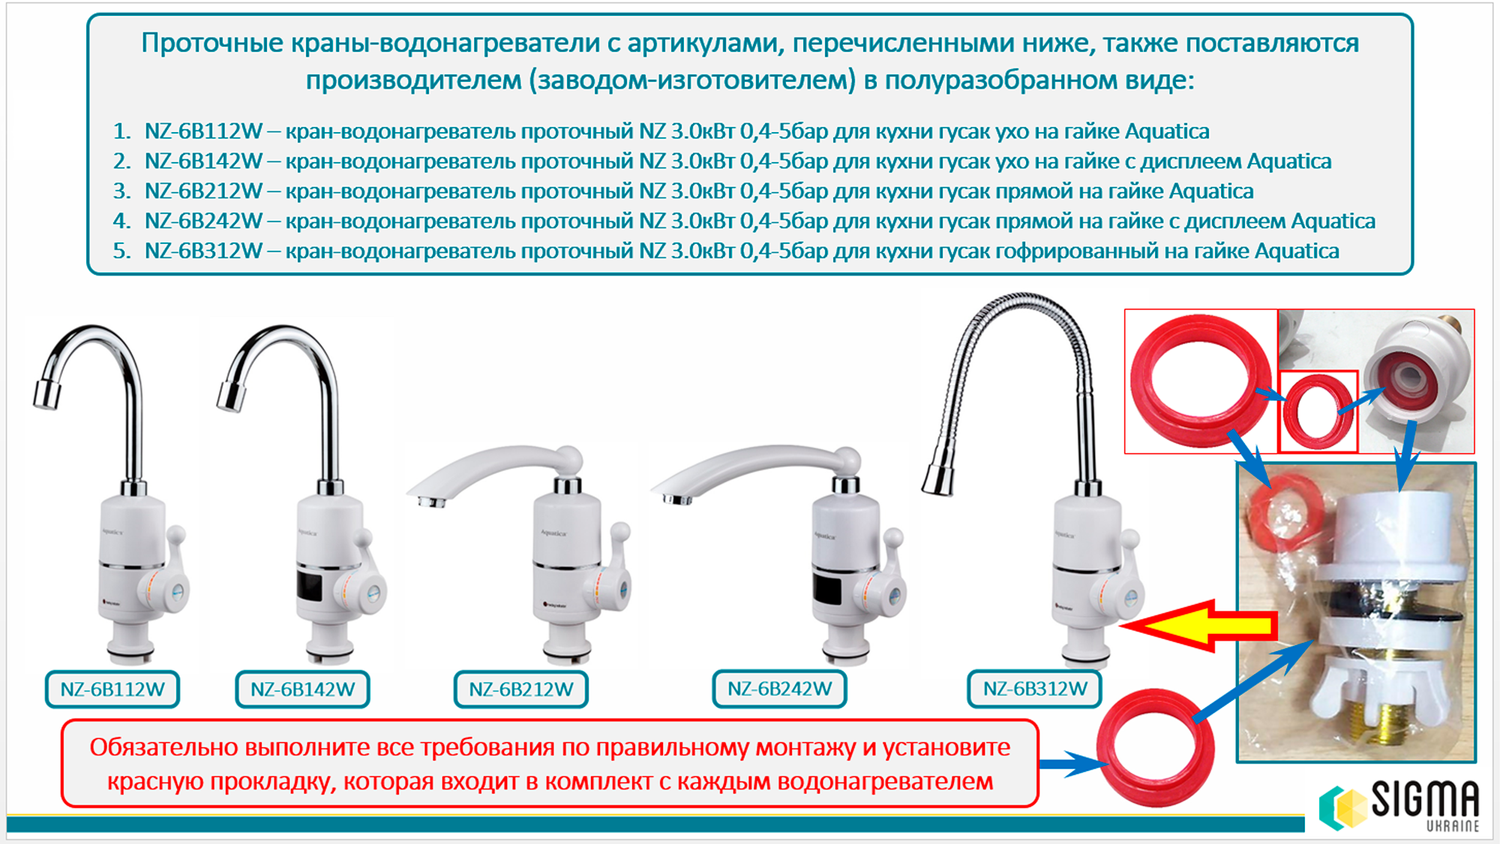 Кран-водонагреватель проточный S97 3.0Квт для кухни Aquatica, гусак ухо на гайке, с дисплеем Nz-6B142W